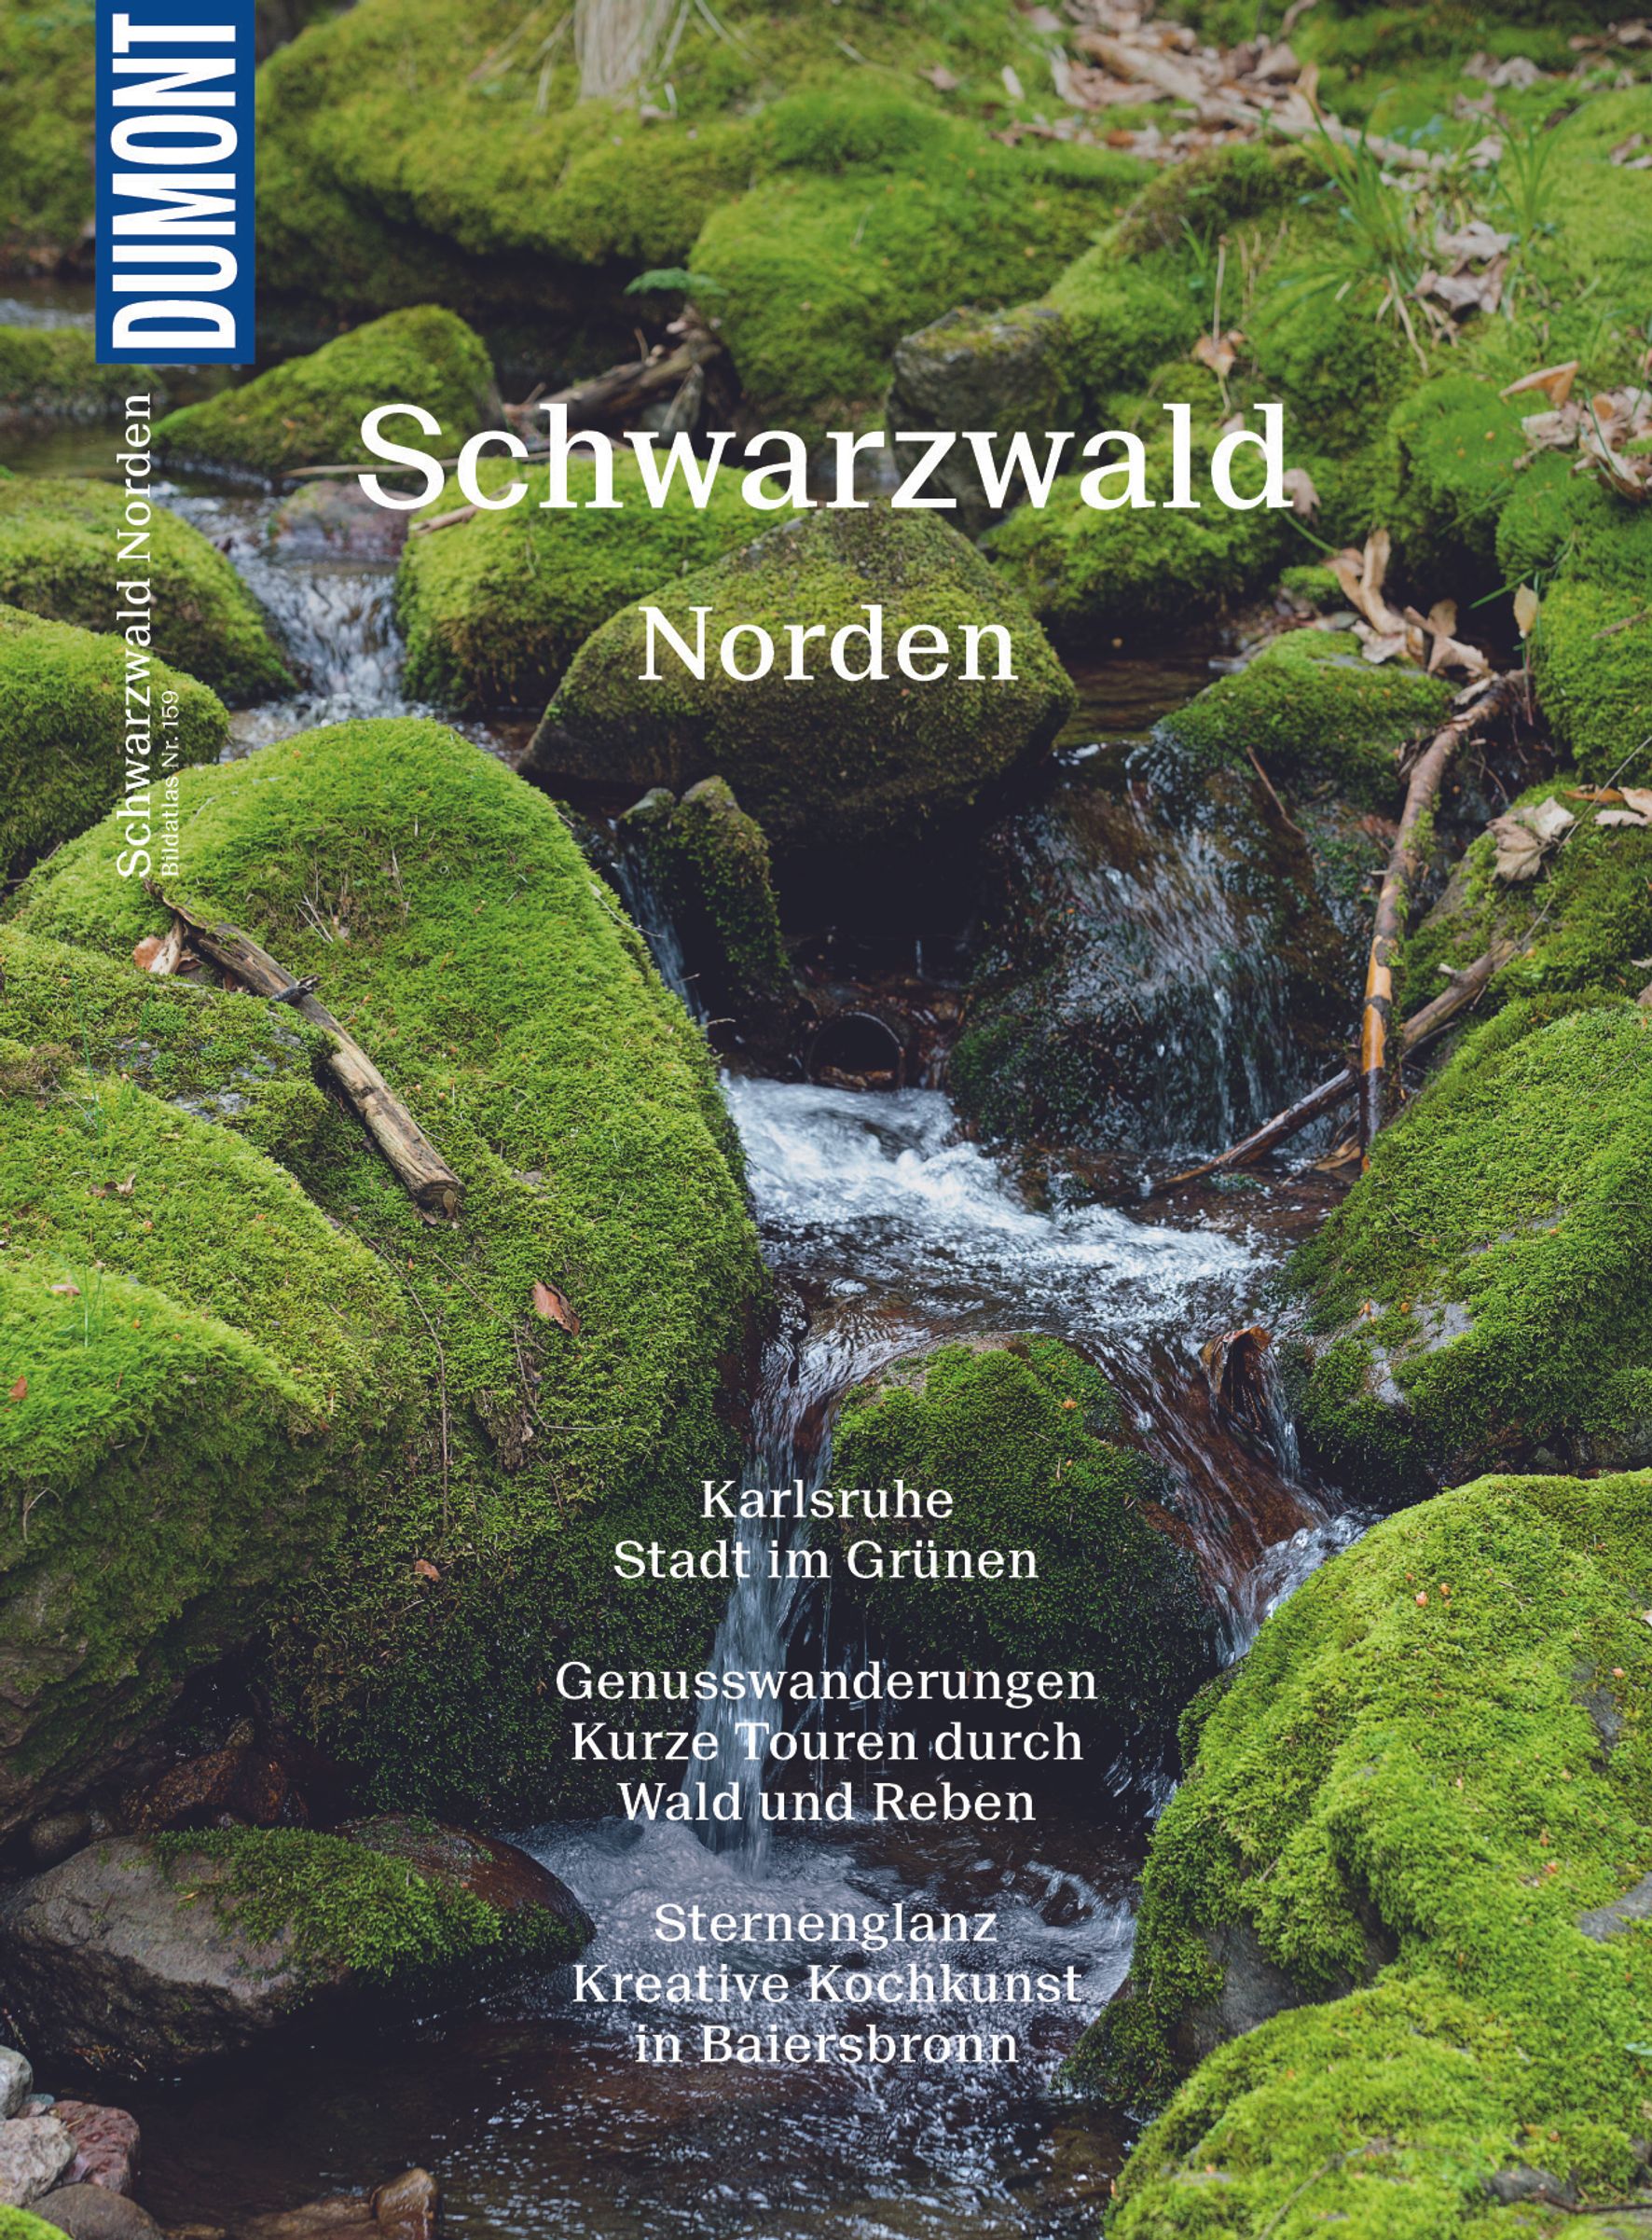 MAIRDUMONT Schwarzwald Norden (eBook)